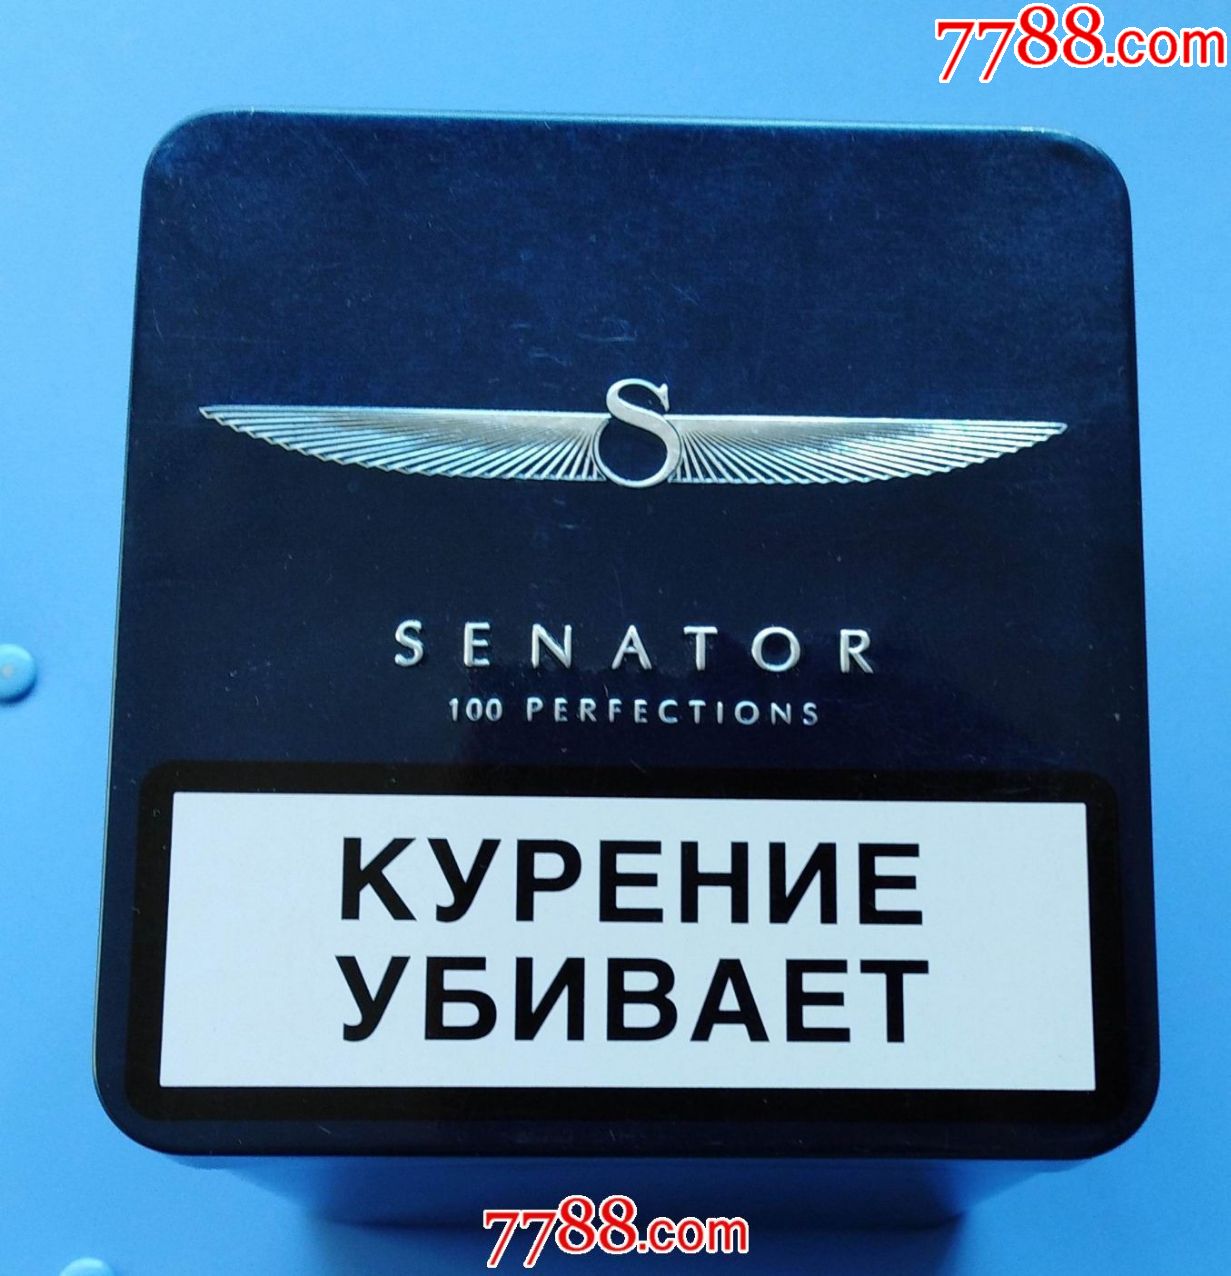 《俄罗斯参议院》铁烟盒外包装(规格95*10*102厘米,内能装5盒)